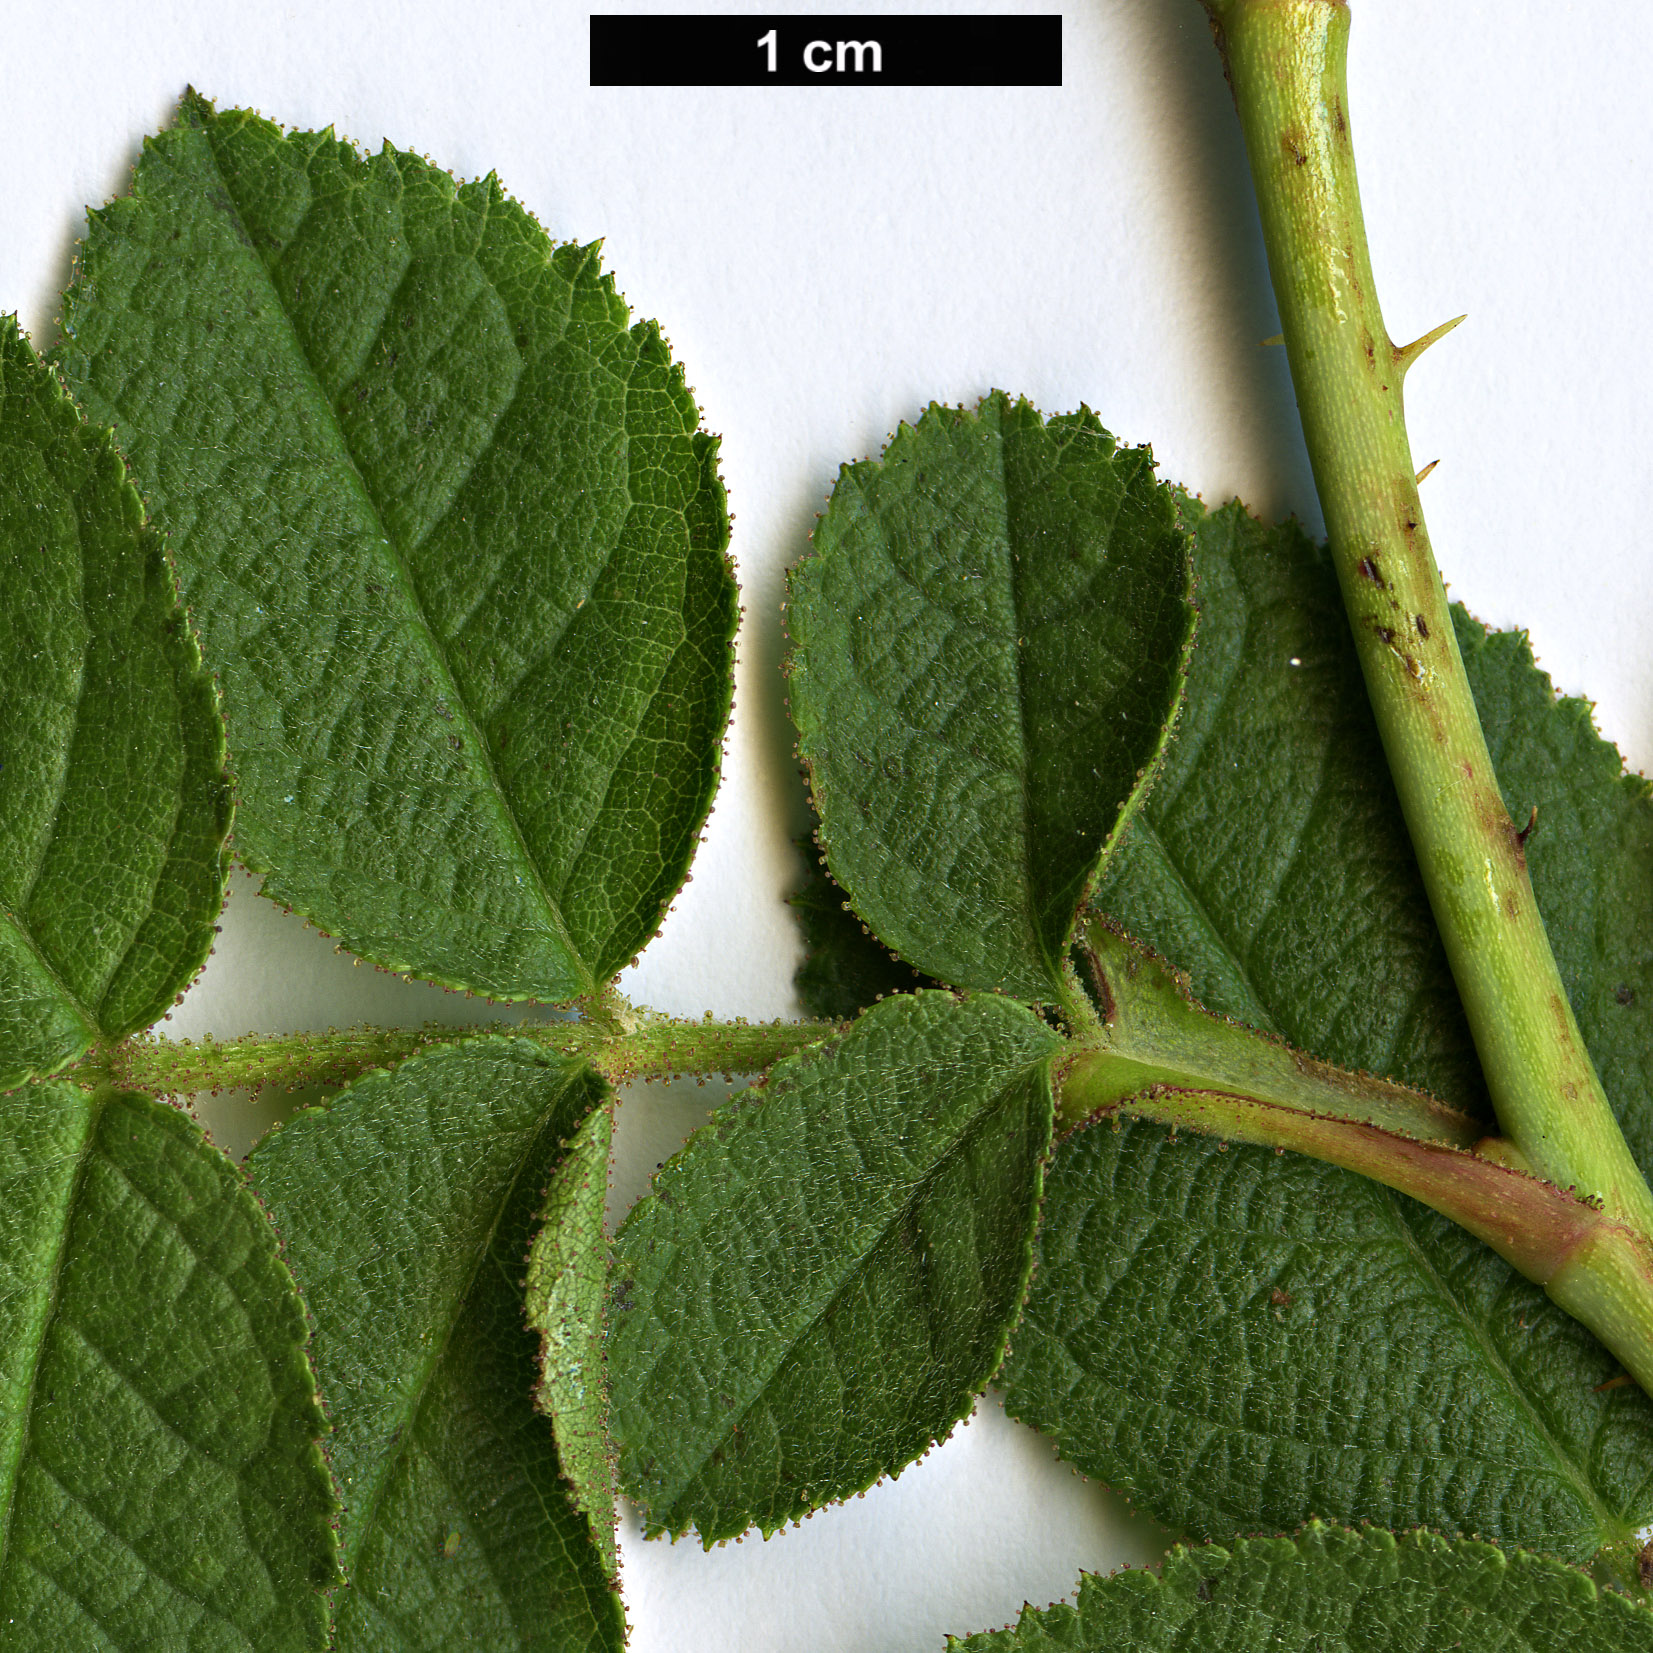 High resolution image: Family: Rosaceae - Genus: Rosa - Taxon: rubiginosa - SpeciesSub: subsp. columnifera